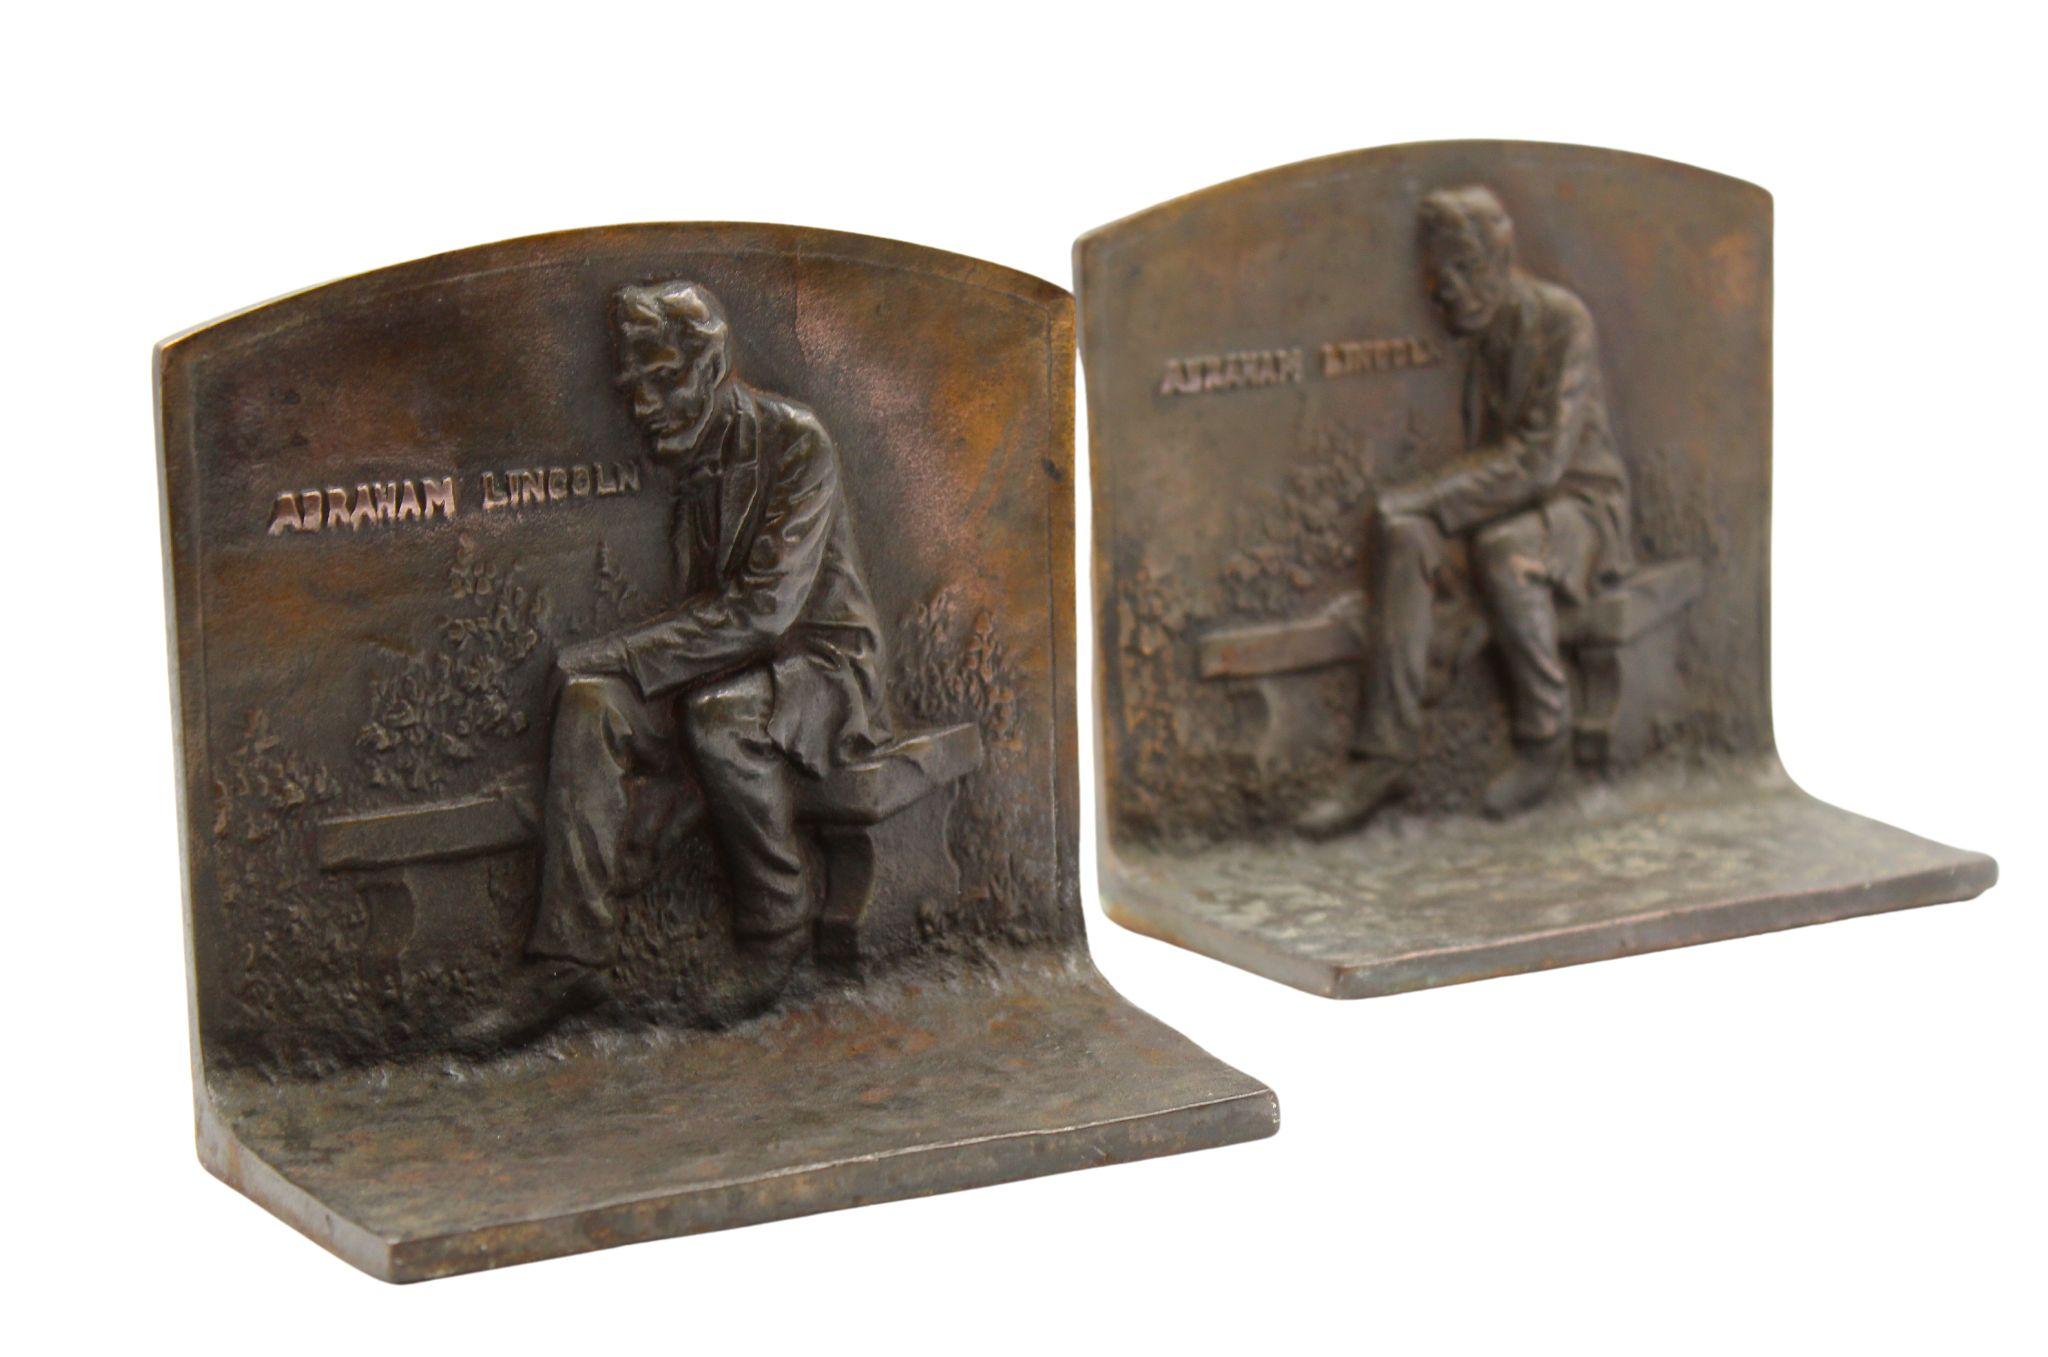 Präsentiert wird ein Paar von Vintage-Buchstützen, die Abraham Lincoln auf einer Bank sitzend darstellen. Die Szene ist als Relief auf der Vorderseite der Buchstützen abgebildet, mit dem Text 